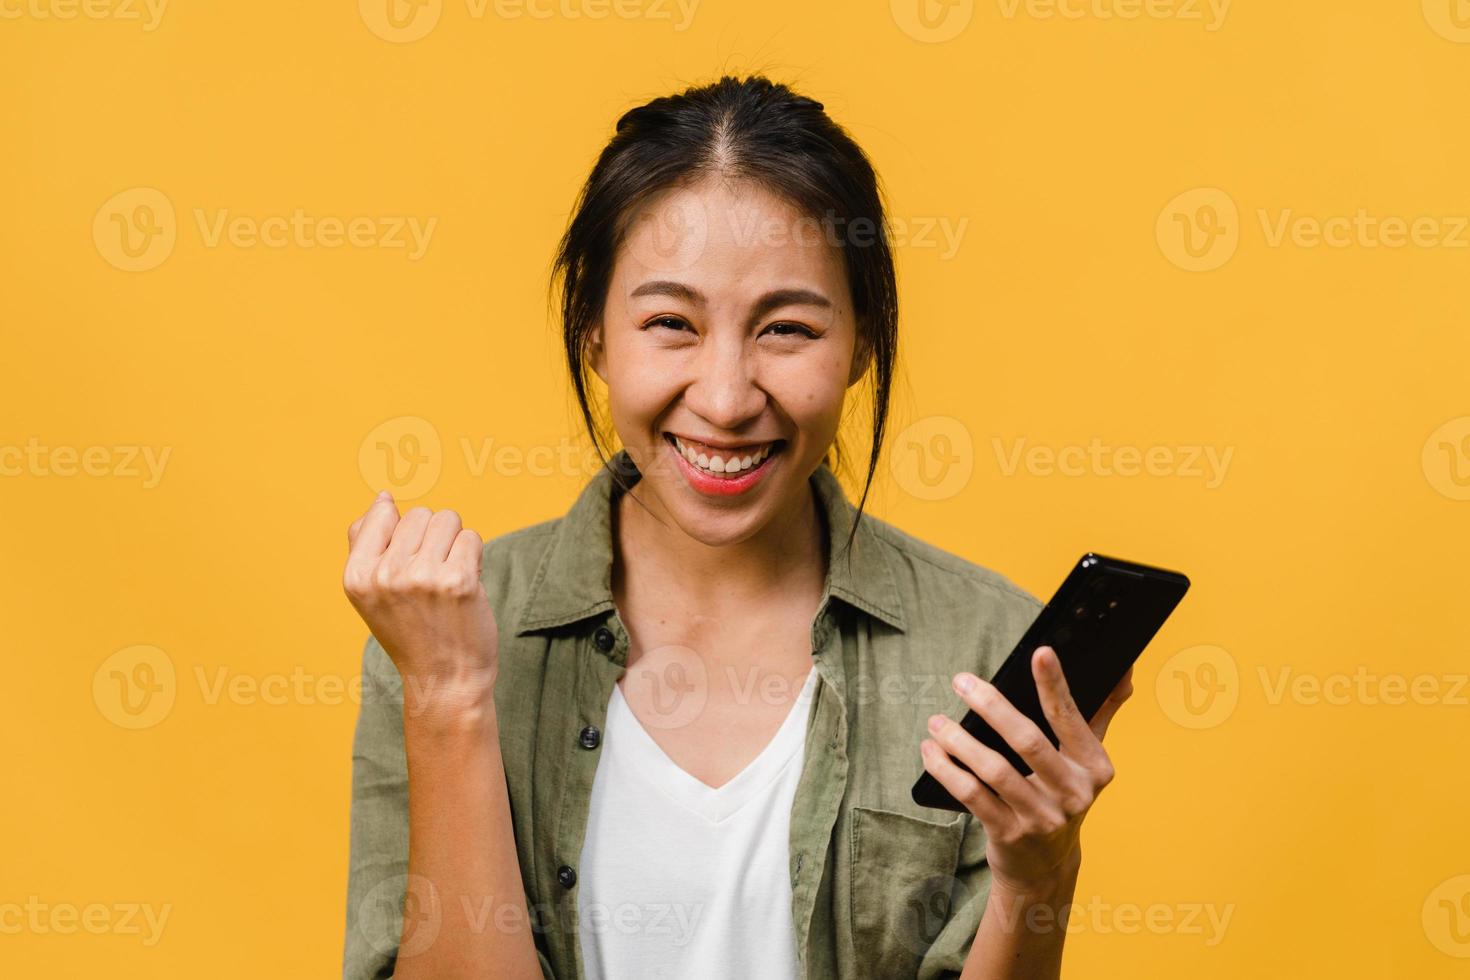 surpris une jeune femme asiatique utilisant un téléphone portable avec une expression positive, sourit largement, vêtue de vêtements décontractés et se tient isolée sur fond jaune. heureuse adorable femme heureuse se réjouit du succès. photo